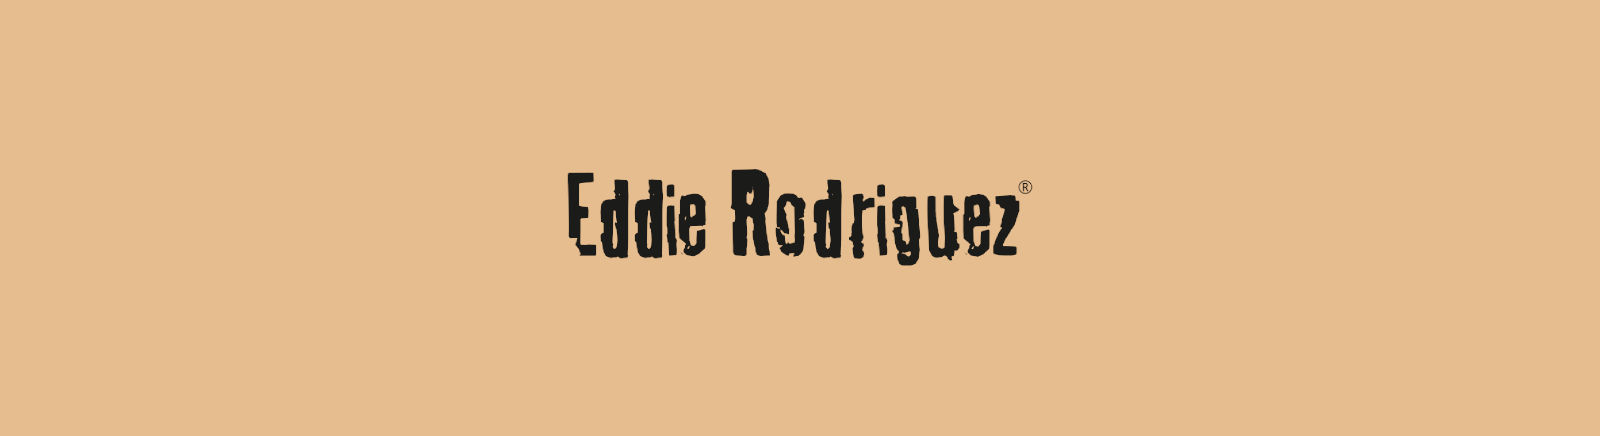 Prange: Eddie Rodriguez Boots für Damen online kaufen online shoppen